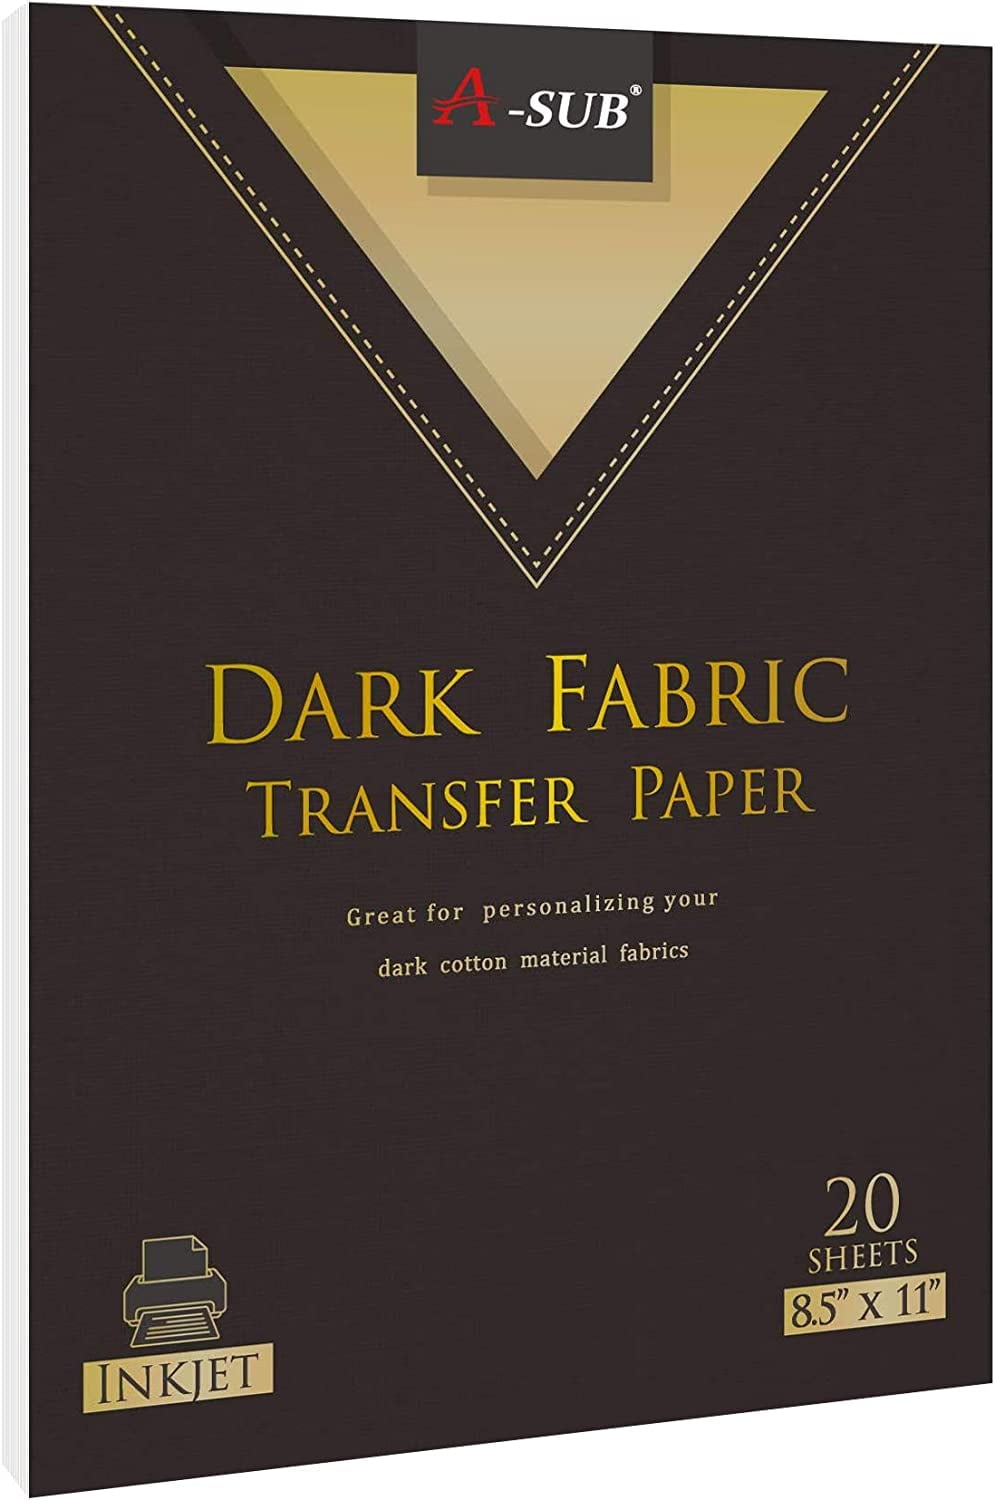 Transfer Master Iron-on Transfer Paper for Dark Fabric, Inkjet